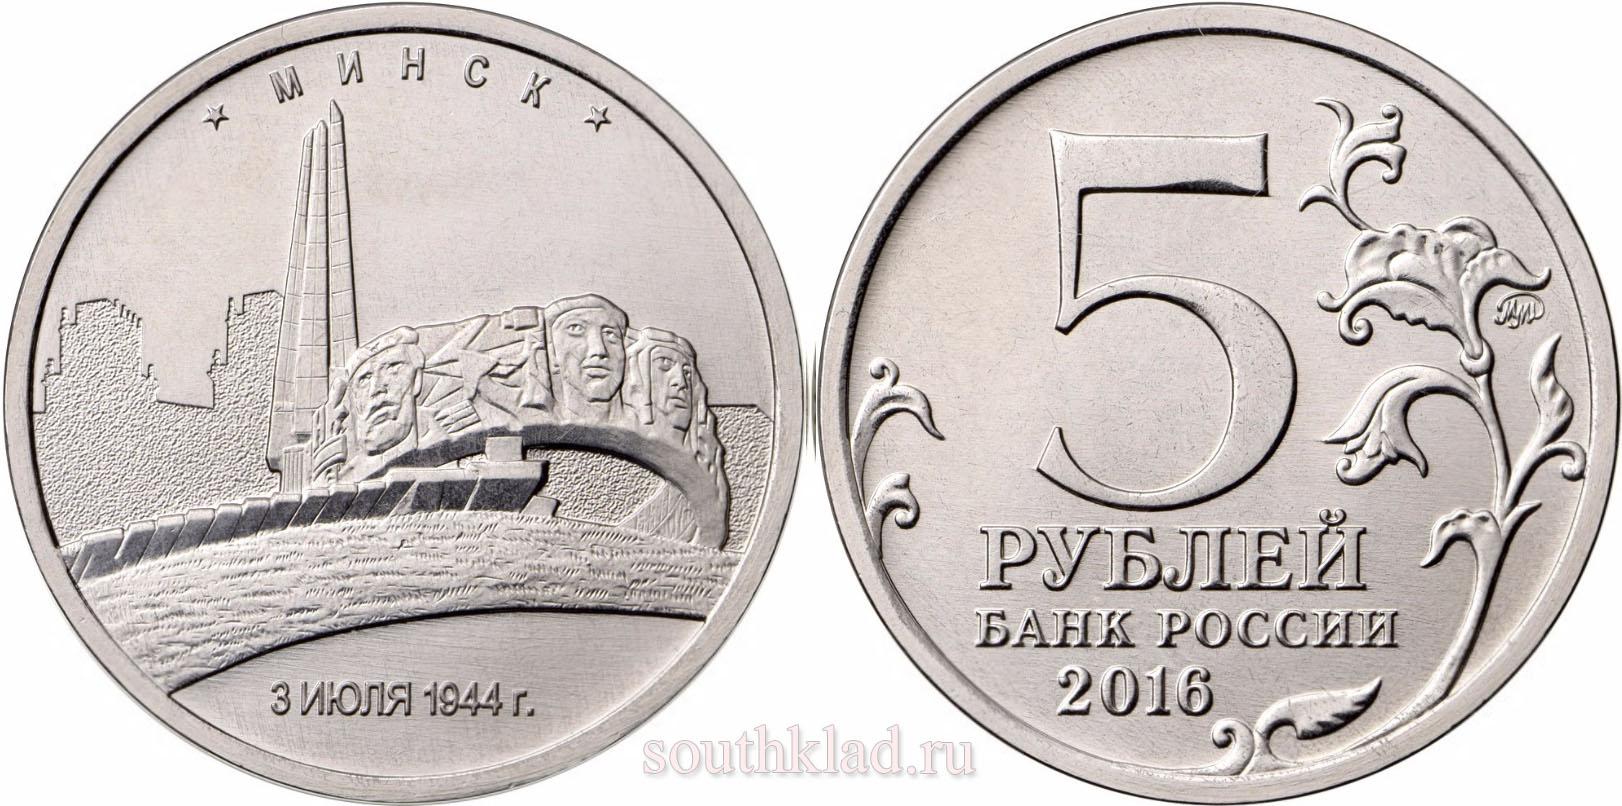 5 рублей 2016 года Минск. 3.07.1944 г.